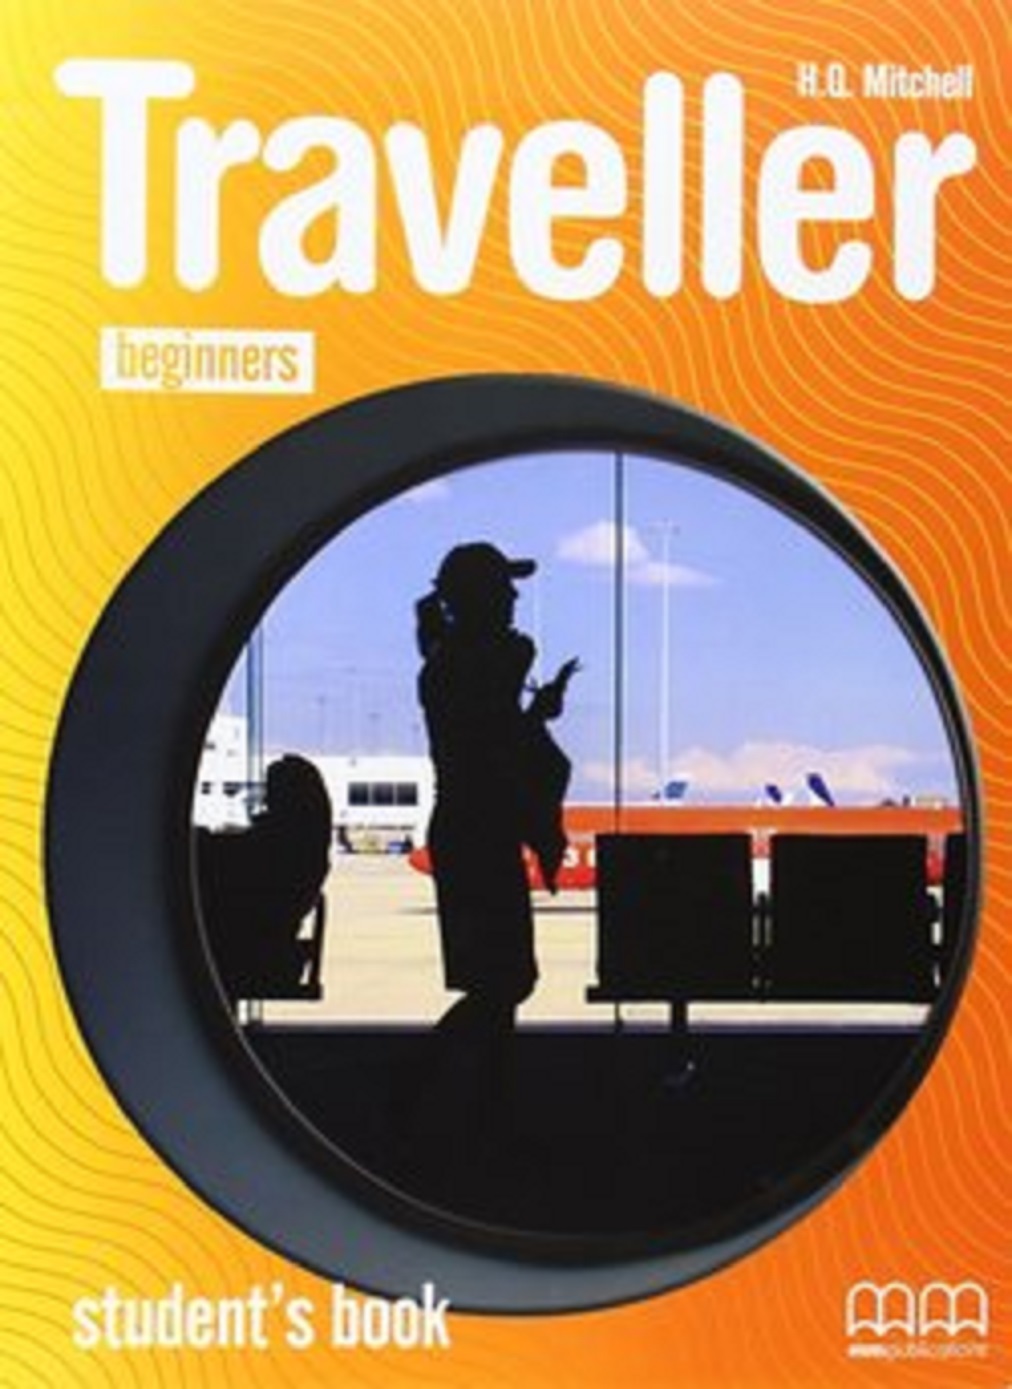 Traveller A1.1 Beginners, A1.2 Elementary & A2 Pre-Intermediate Teacher\'s Resource Pack CD | H. Q. Mitchell